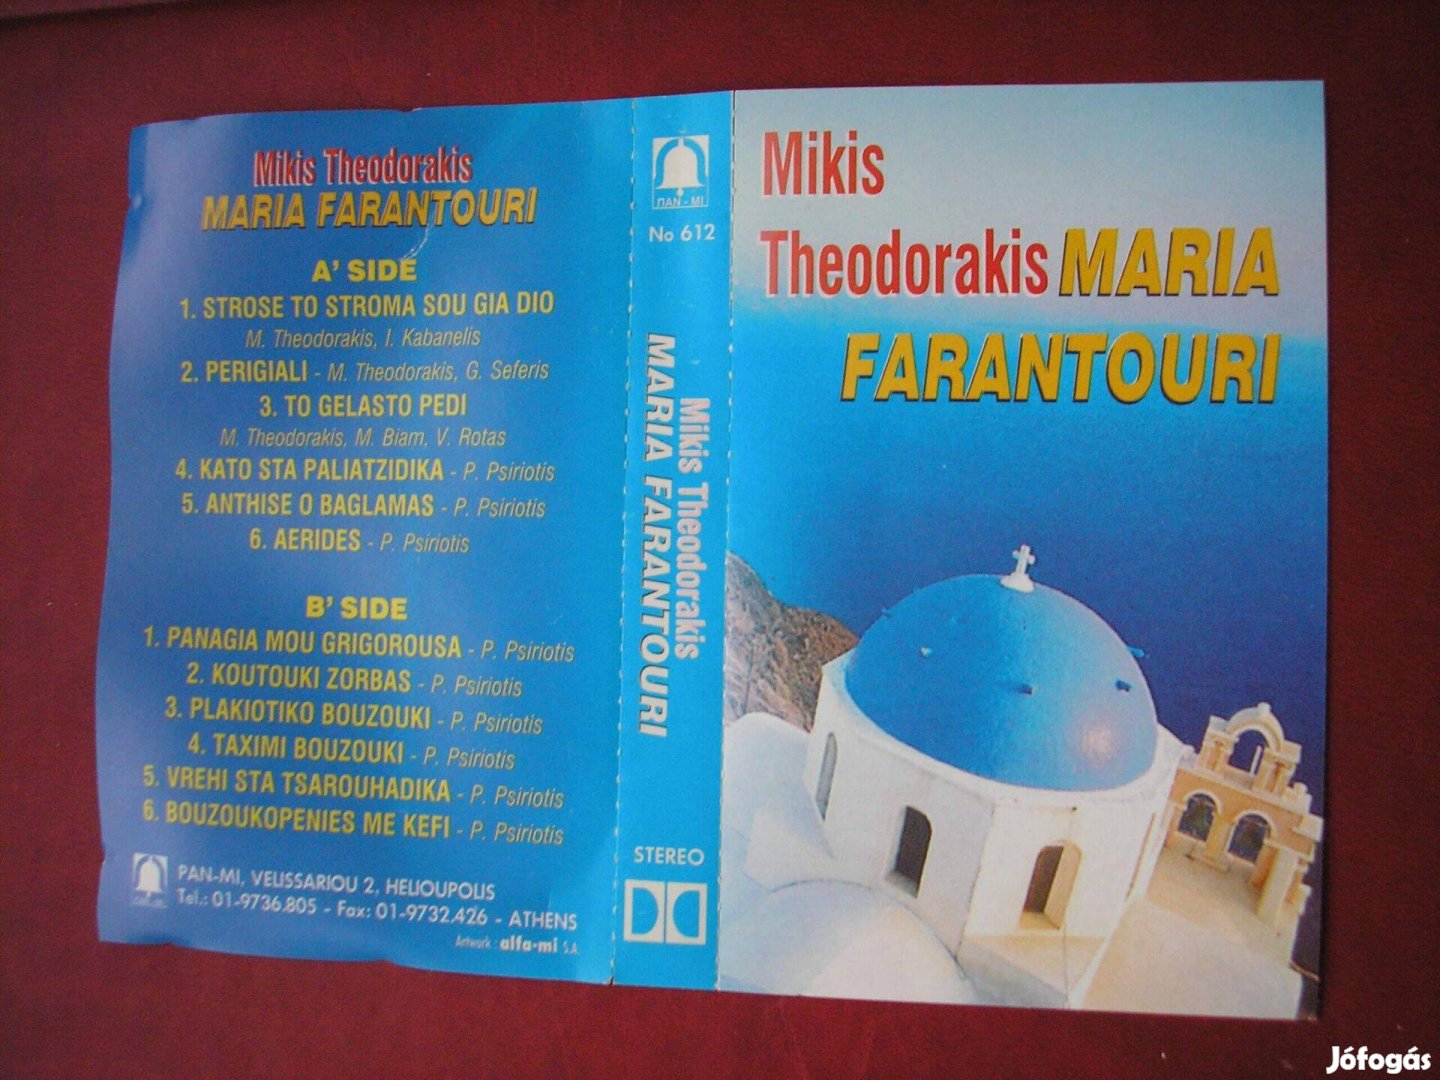 Mikis Theodorakis - Maria Farantouri , gyári műsoros kazetta